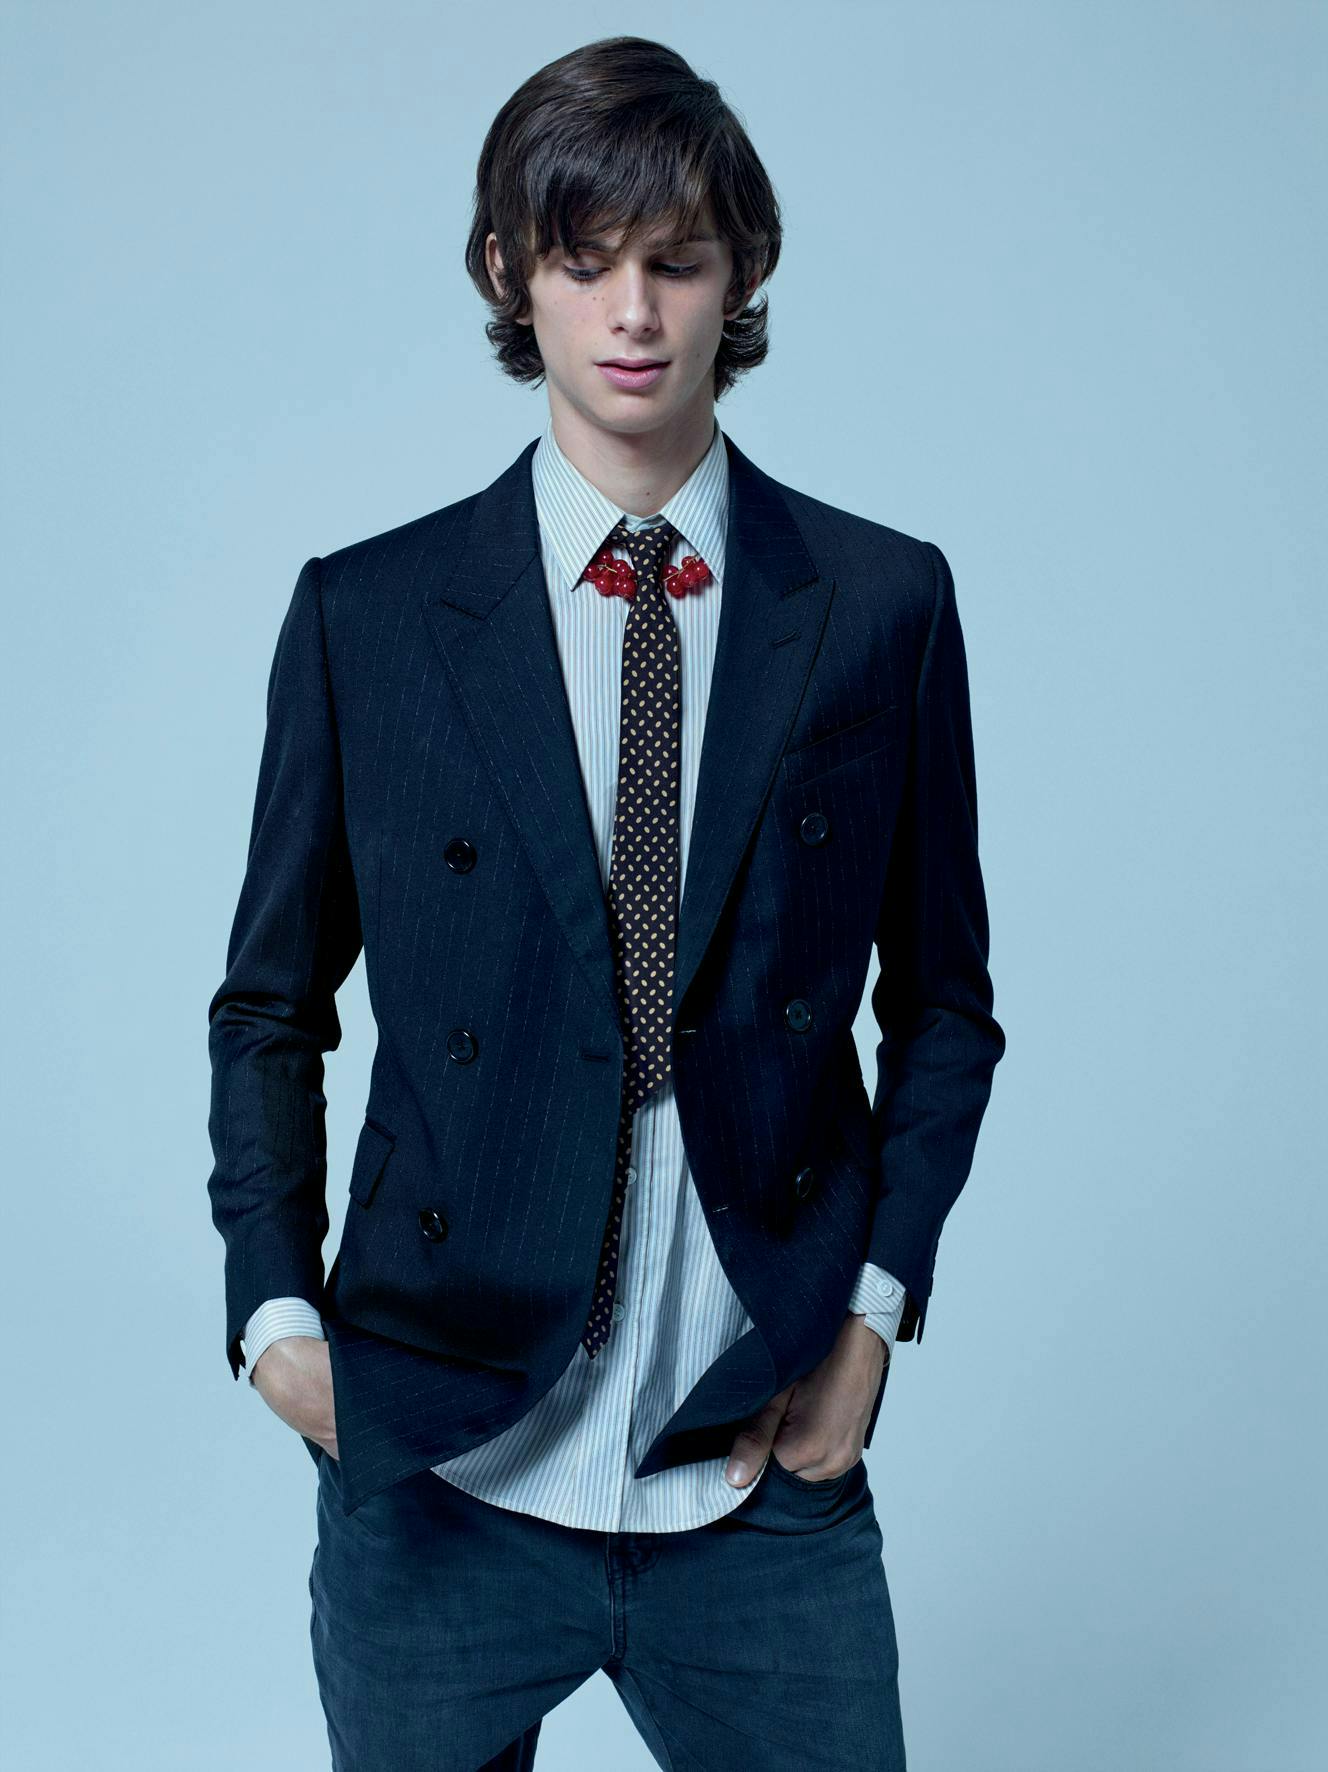 clothing apparel tie accessories blazer coat jacket suit overcoat person